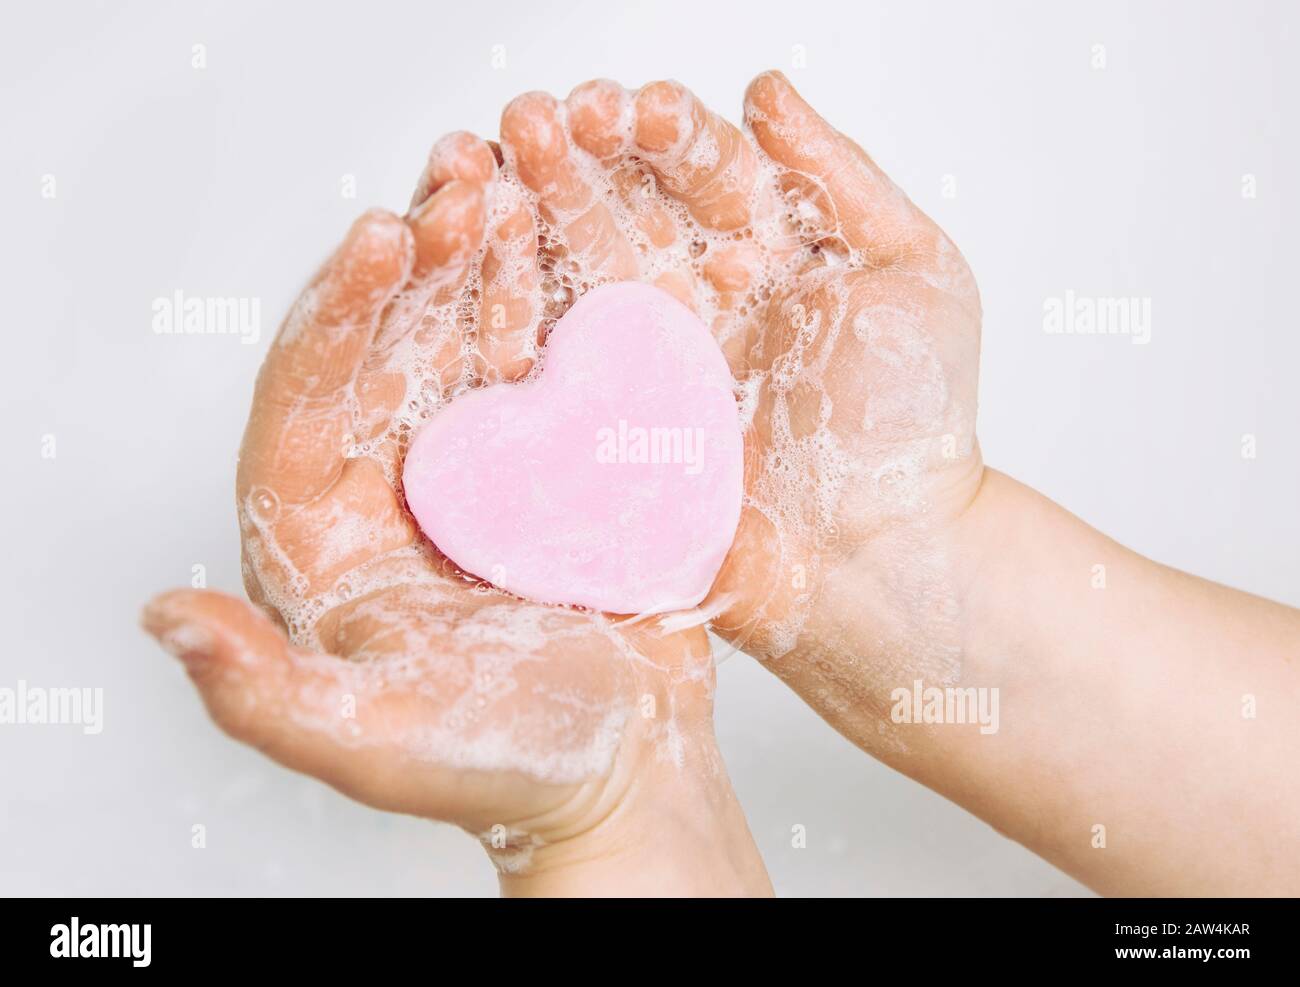 Importance des soins d'hygiène personnelle. Vue plate sur la couche de savon pour enfants se lavant les mains sales avec une barre de savon rose en forme de coeur, beaucoup de mousse. Espace de copie. Banque D'Images